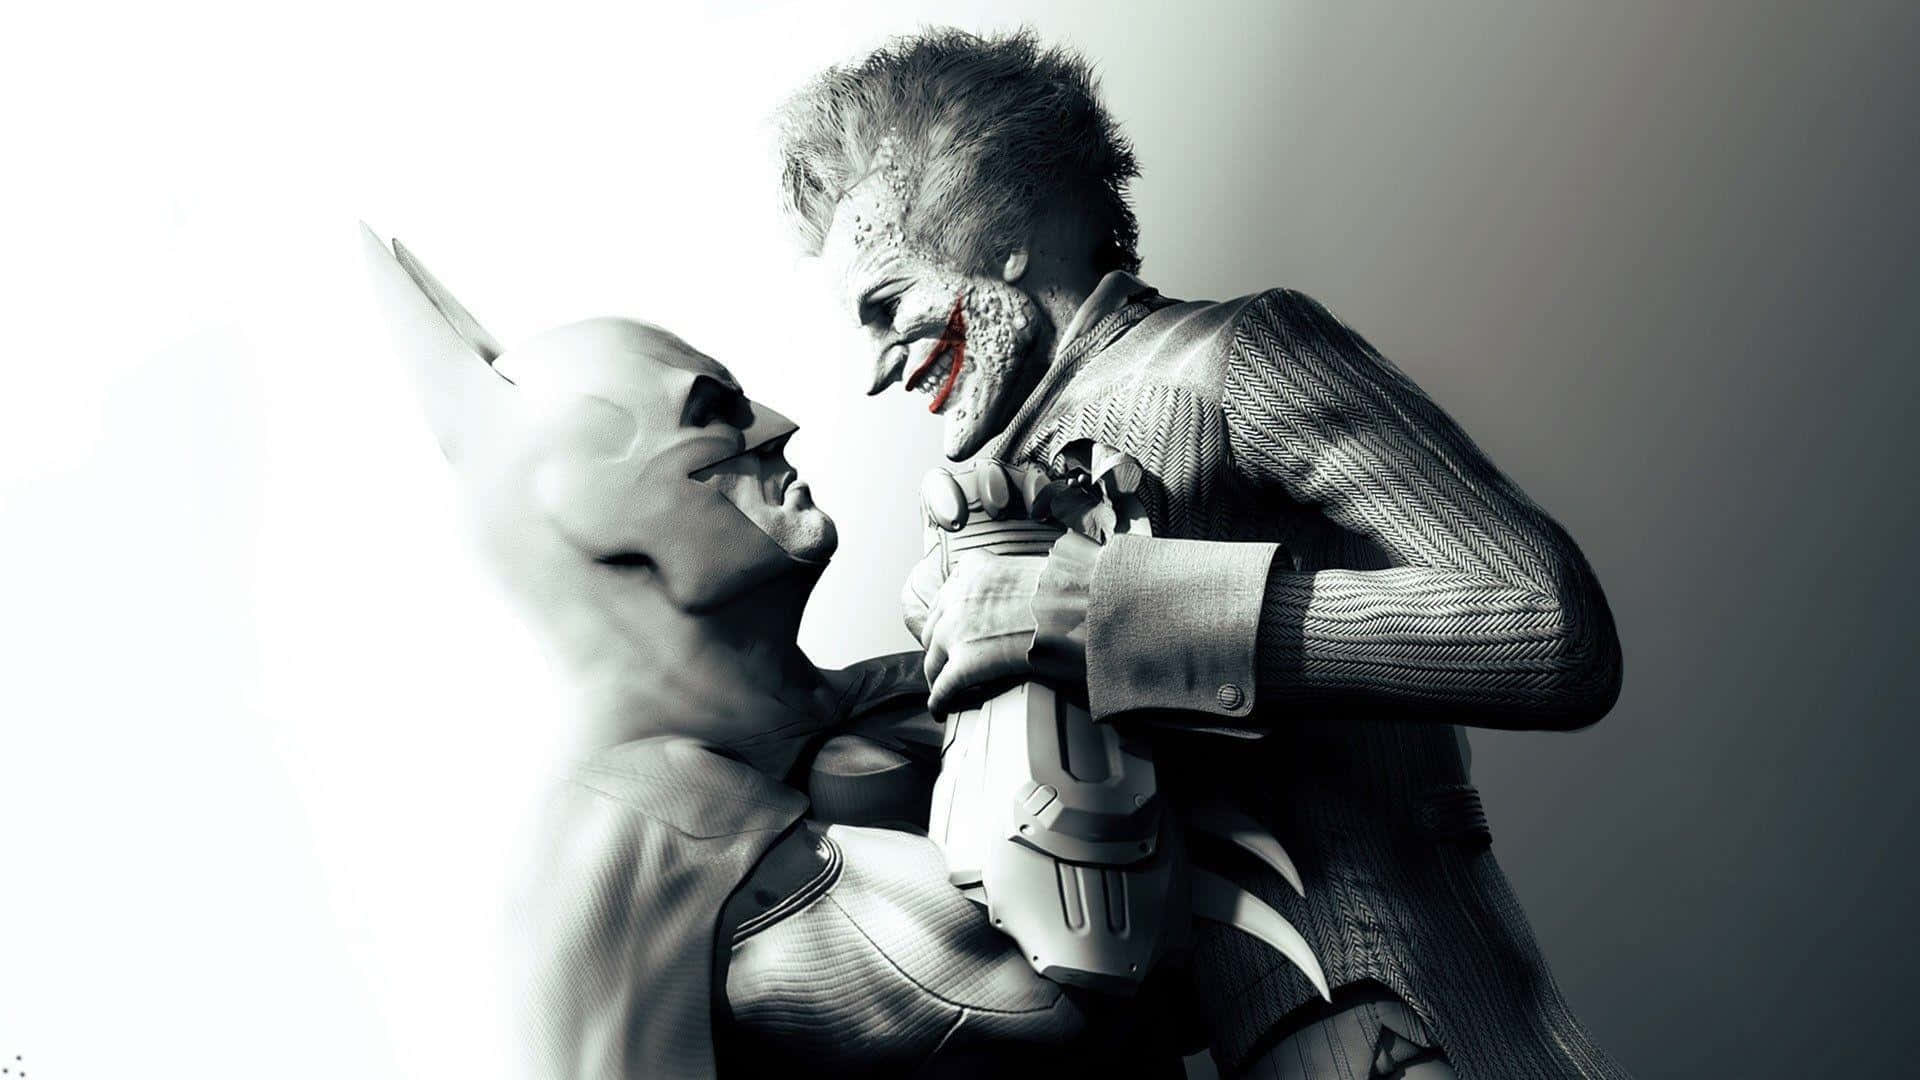 Batmankämpft Sich Durch Das Arkham Asylum. Wallpaper